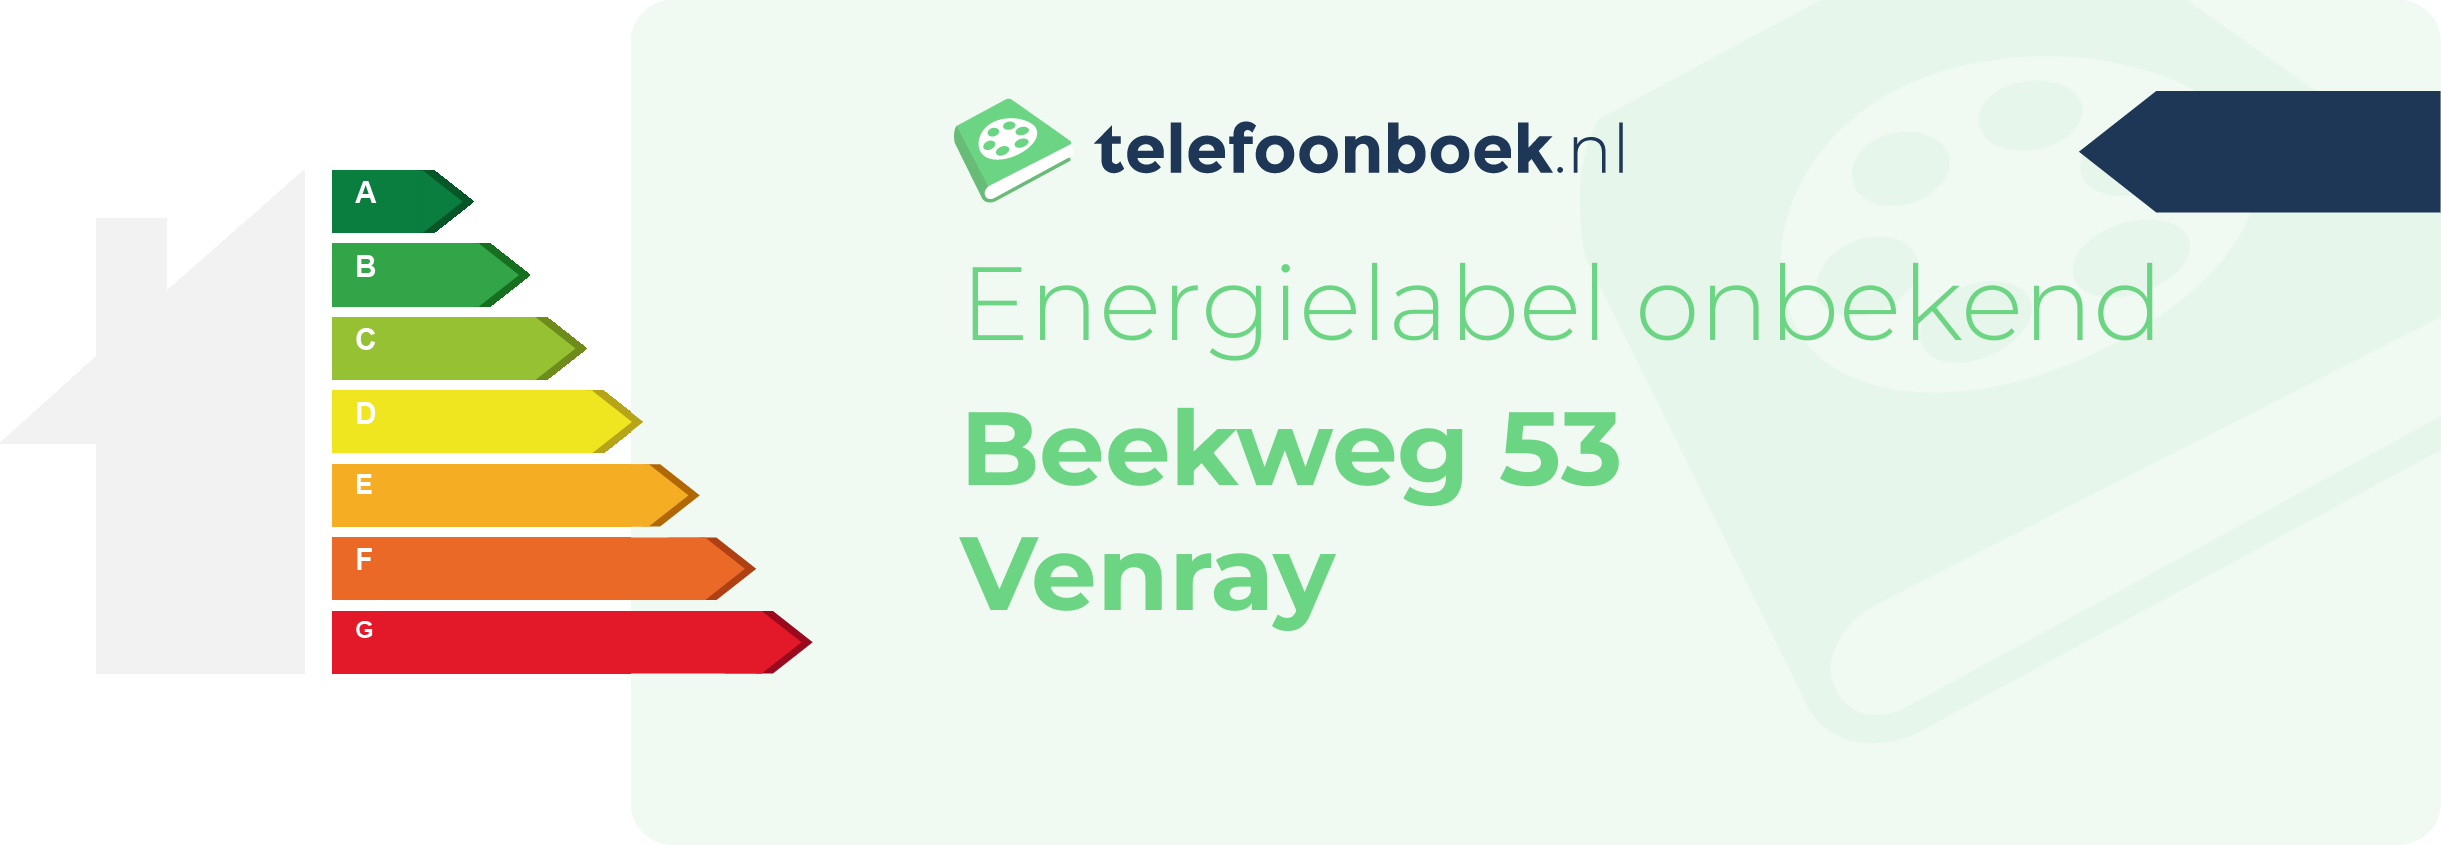 Energielabel Beekweg 53 Venray